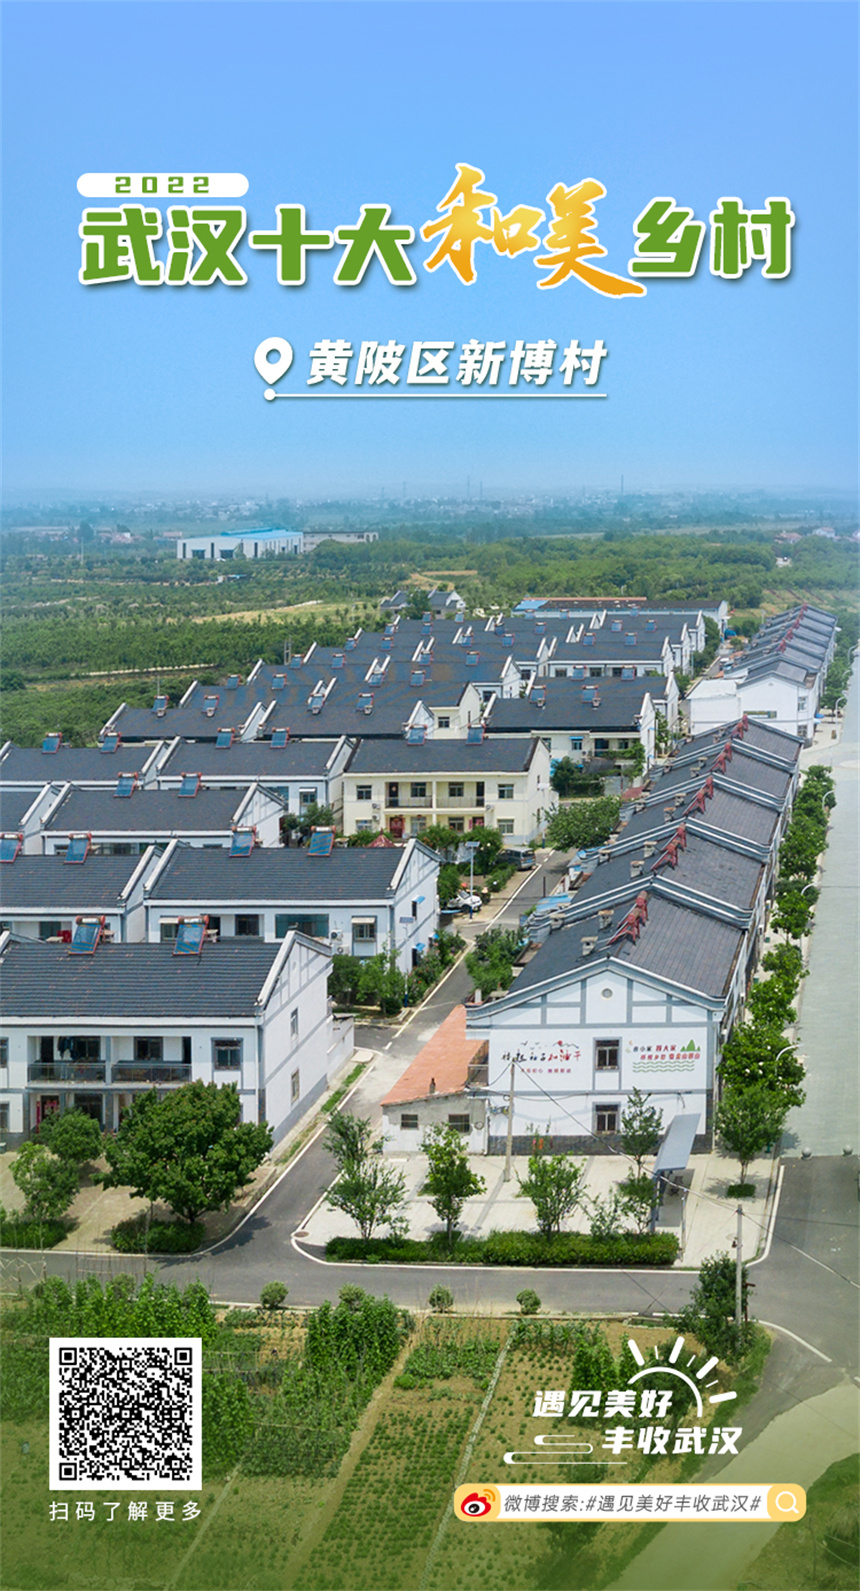 武汉评出“2022十大和美乡村”